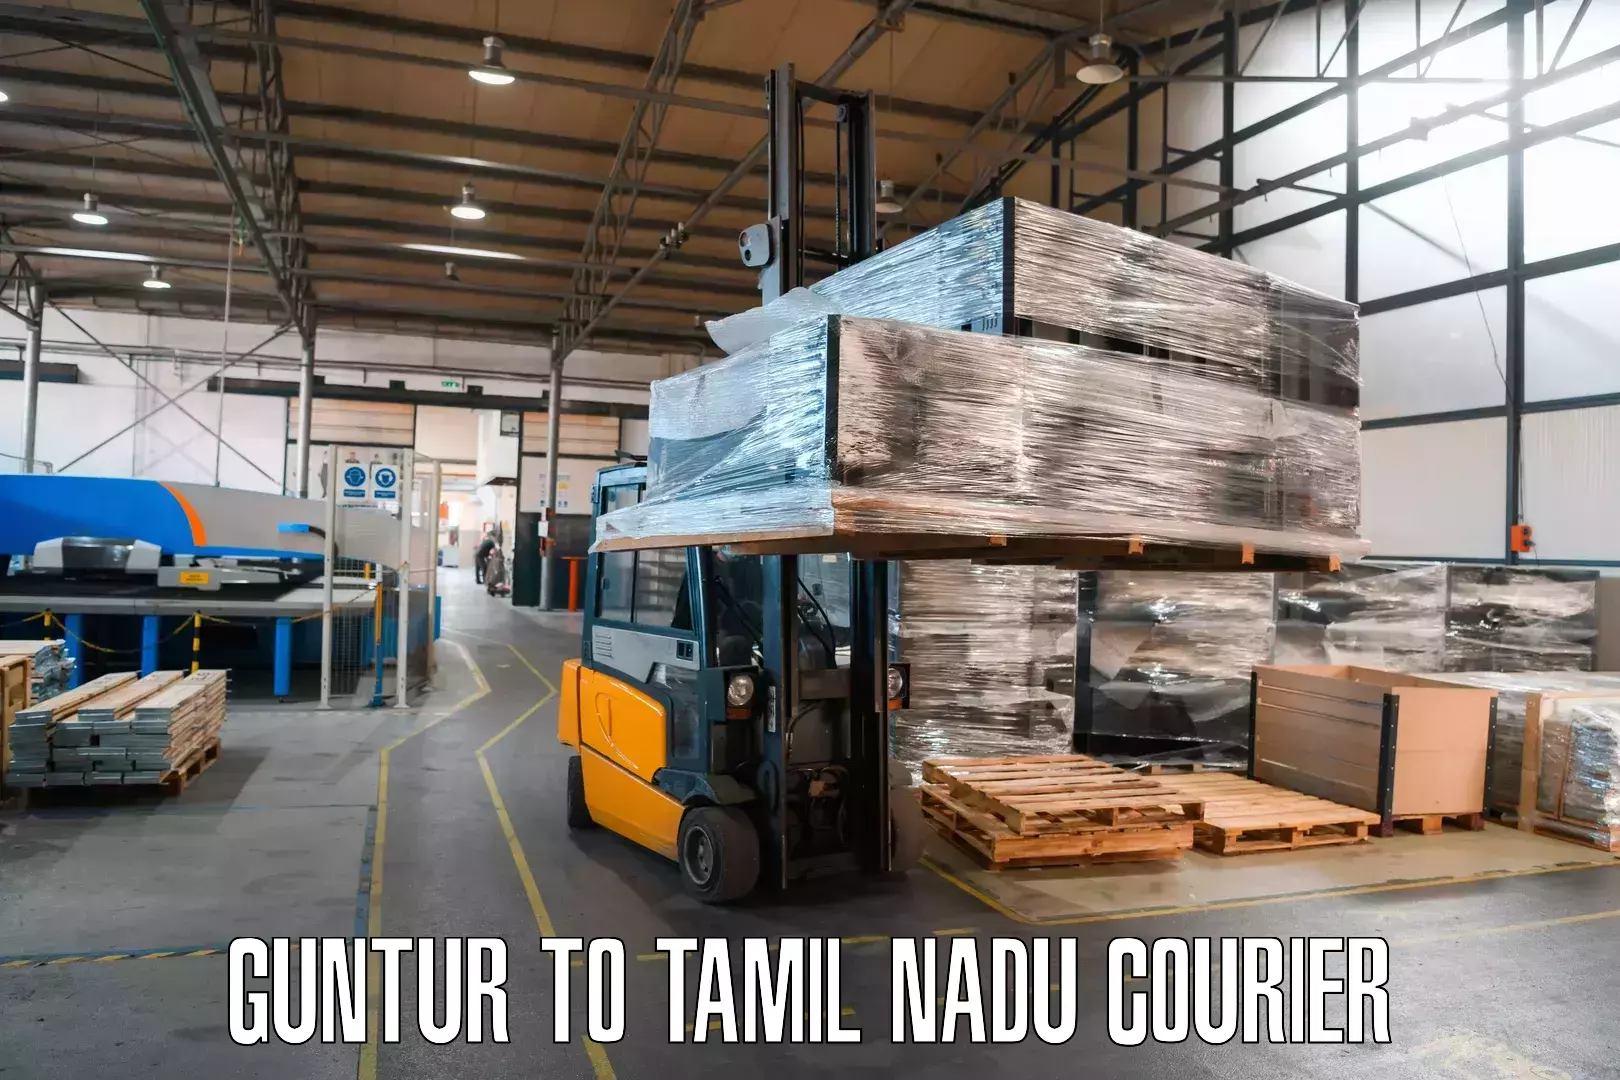 Cost-effective courier solutions Guntur to Arakkonam